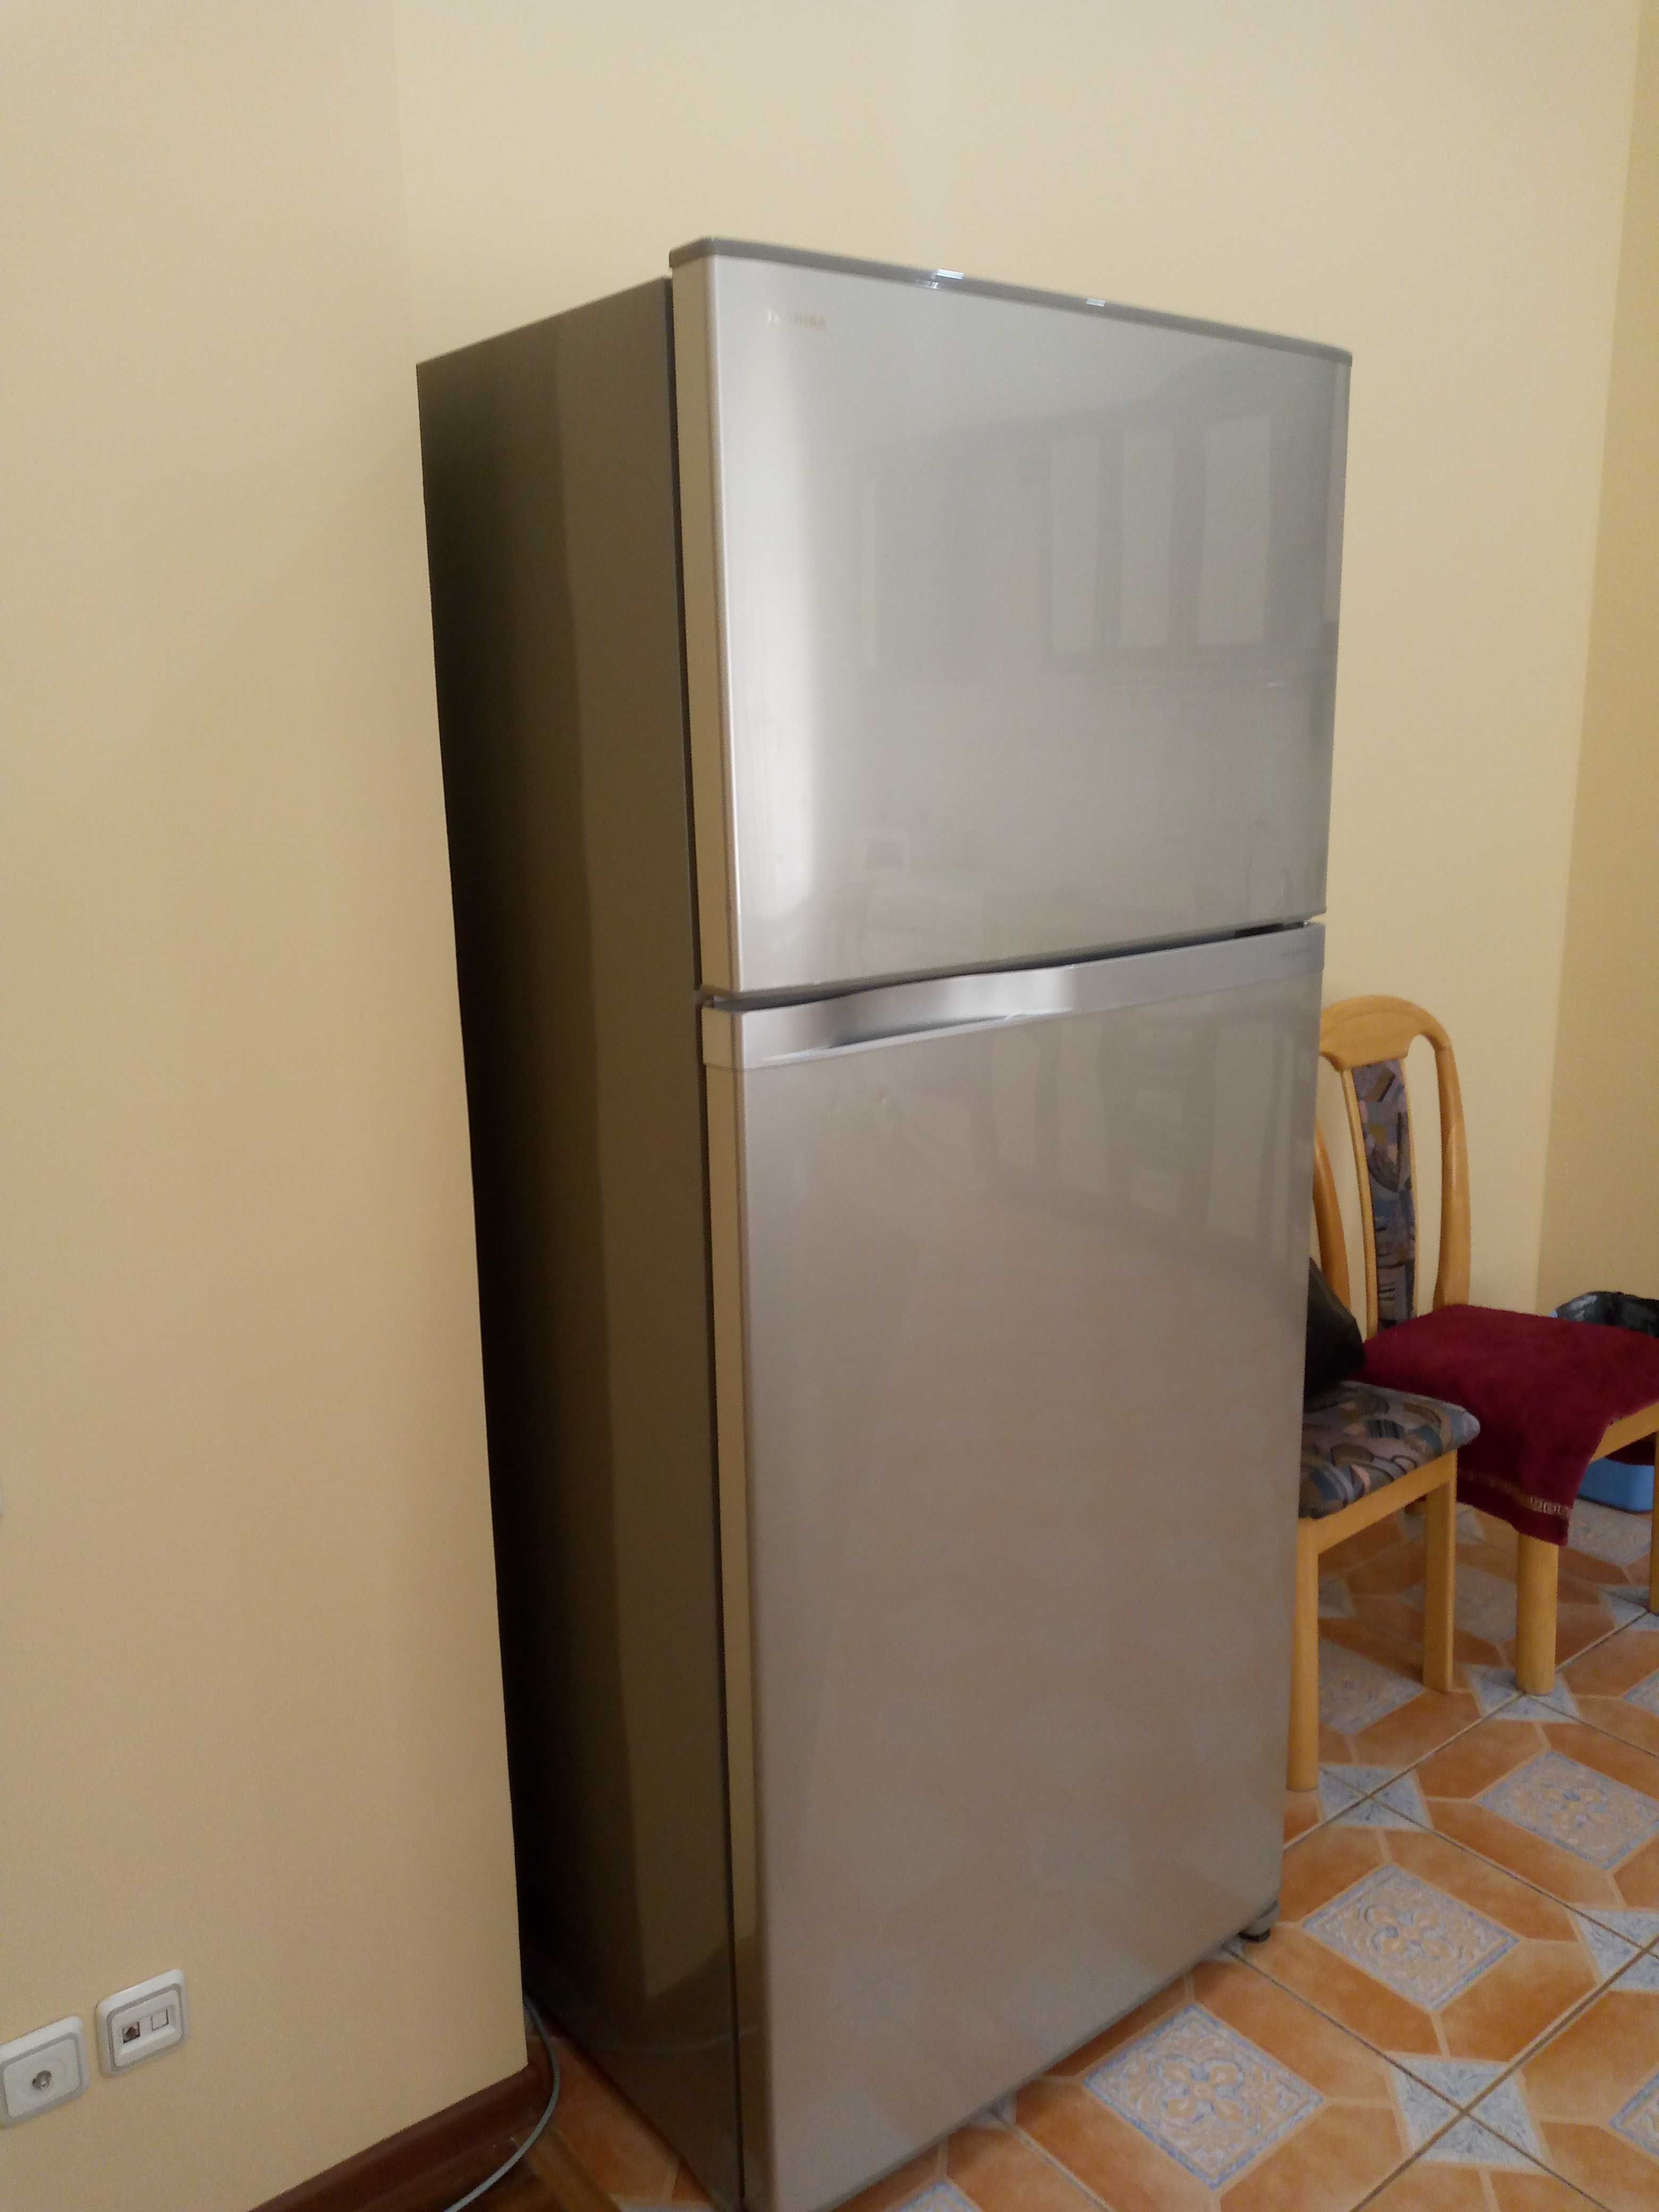 Большой холодильник 608л Toshiba GR-W77UDZ-C, японский бренд